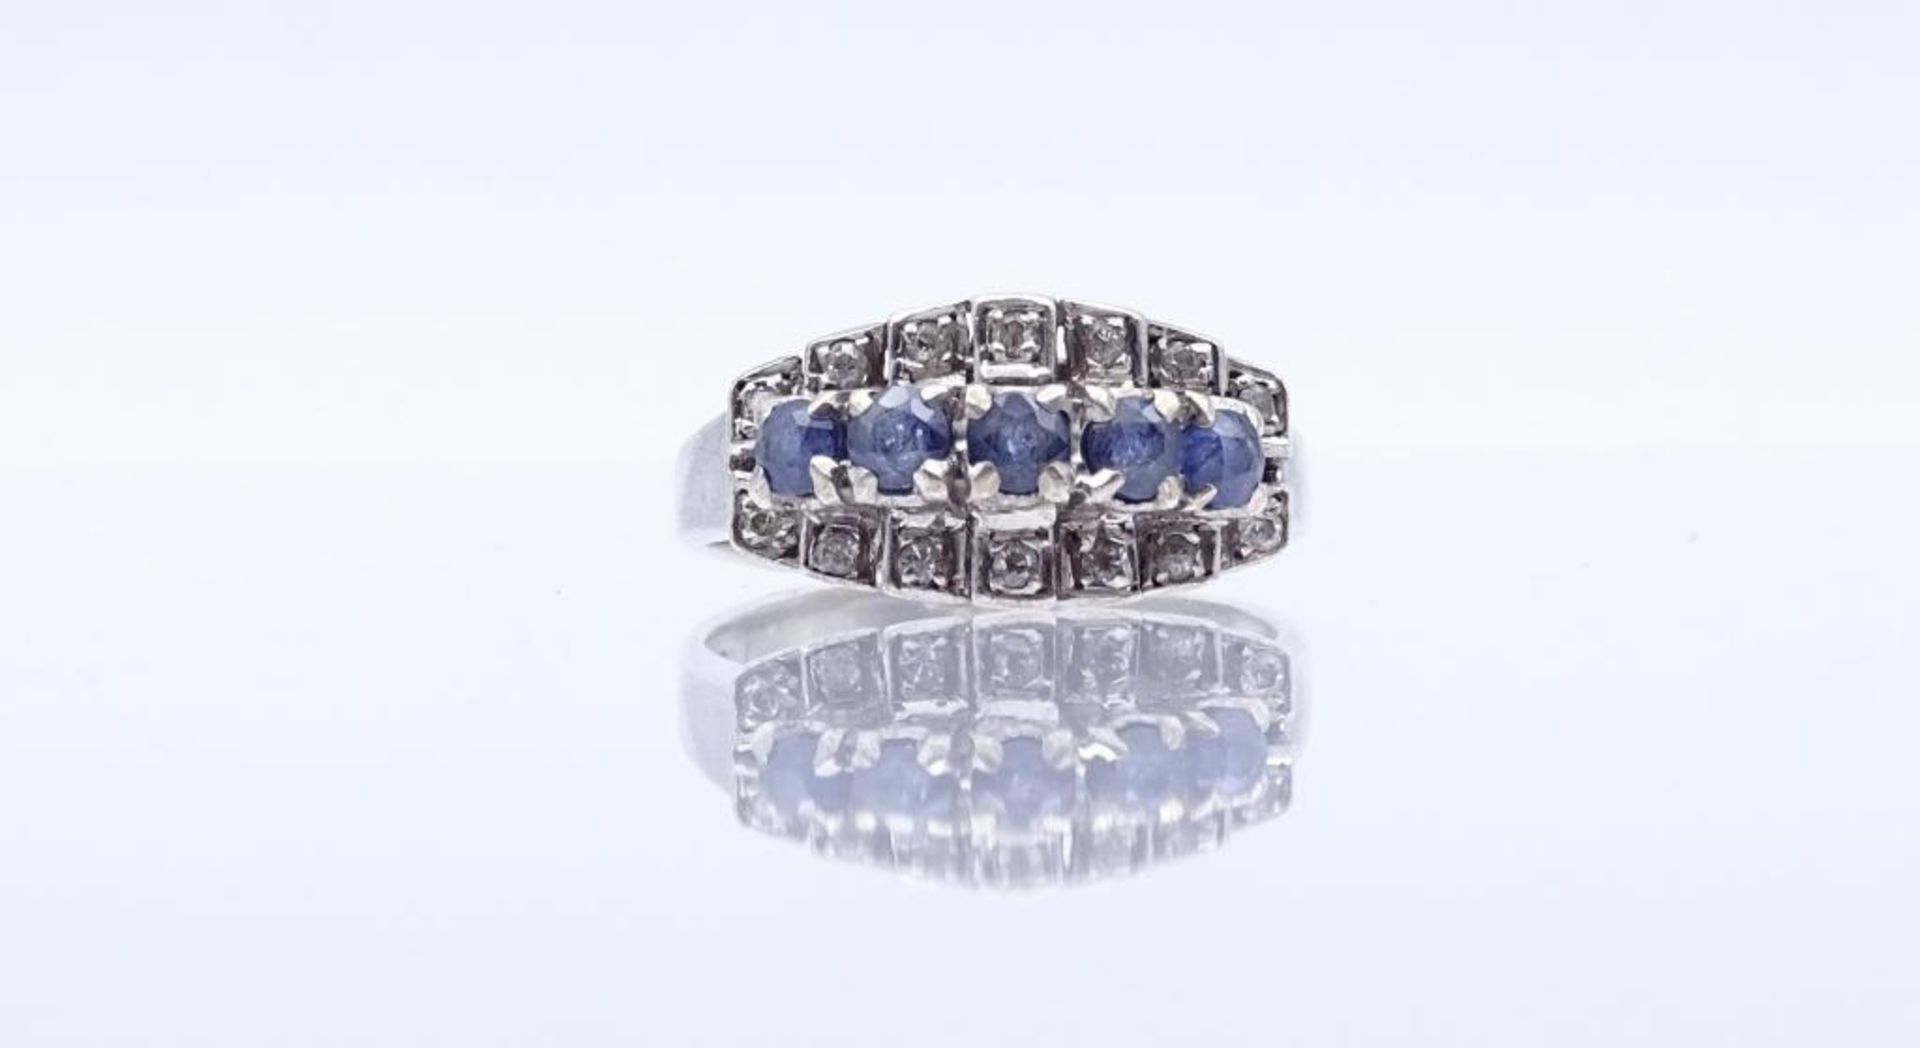 Sterling Silber Ring mit klaren und blauen Steinen (Saphire?), Silber 925/000, 2,9gr., RG 50- - -